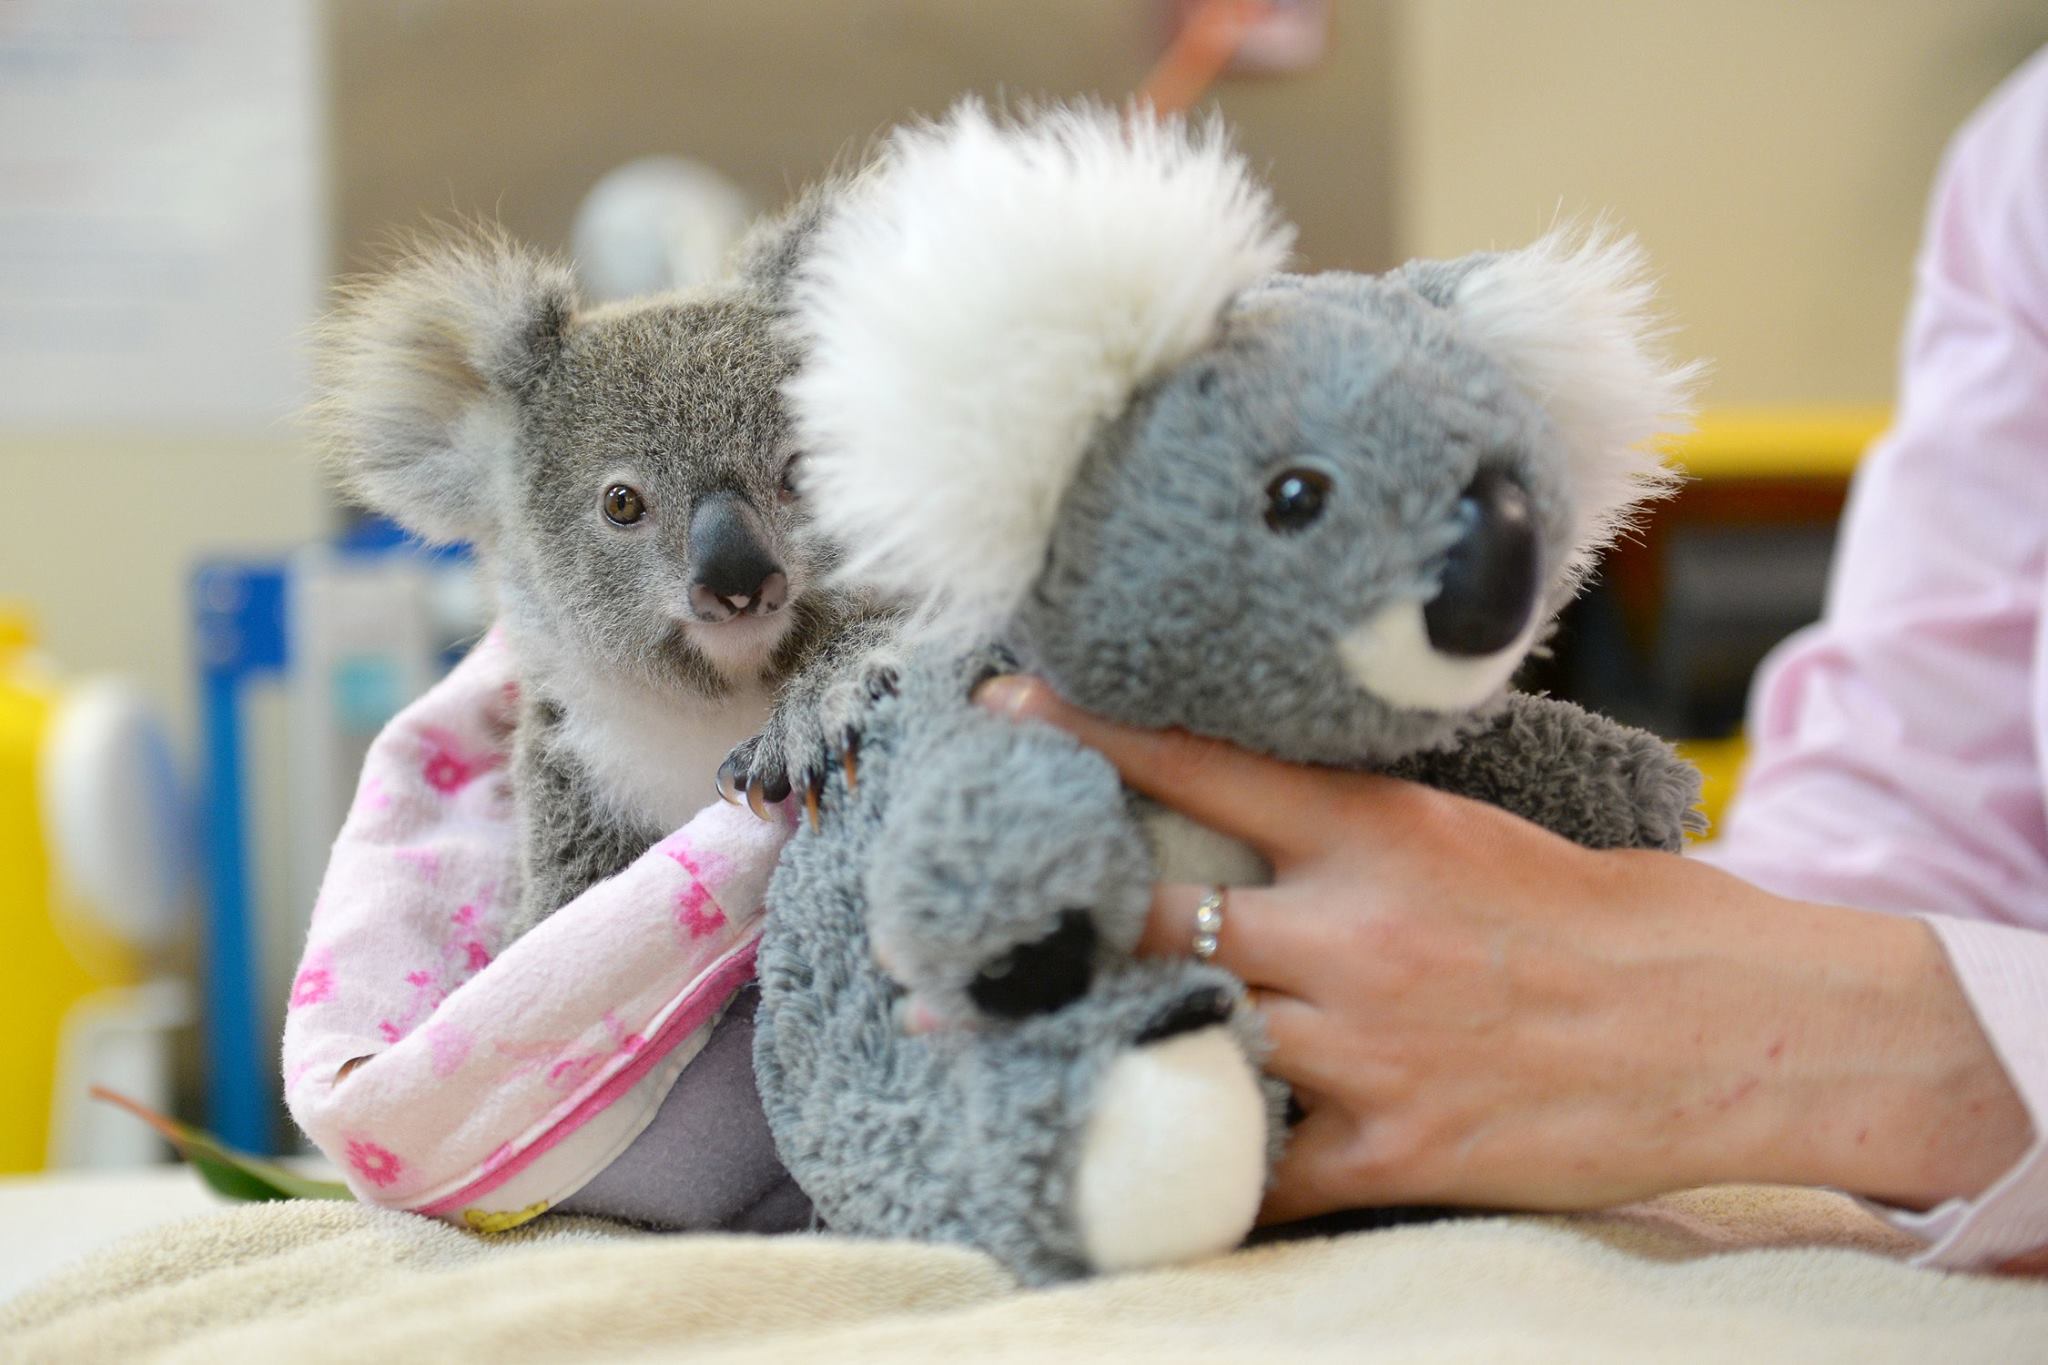 ce-bebe-koala-trouve-du-reconfort-avec-jouet-en-peluche-apres-avoir-perdu-sa-maman1